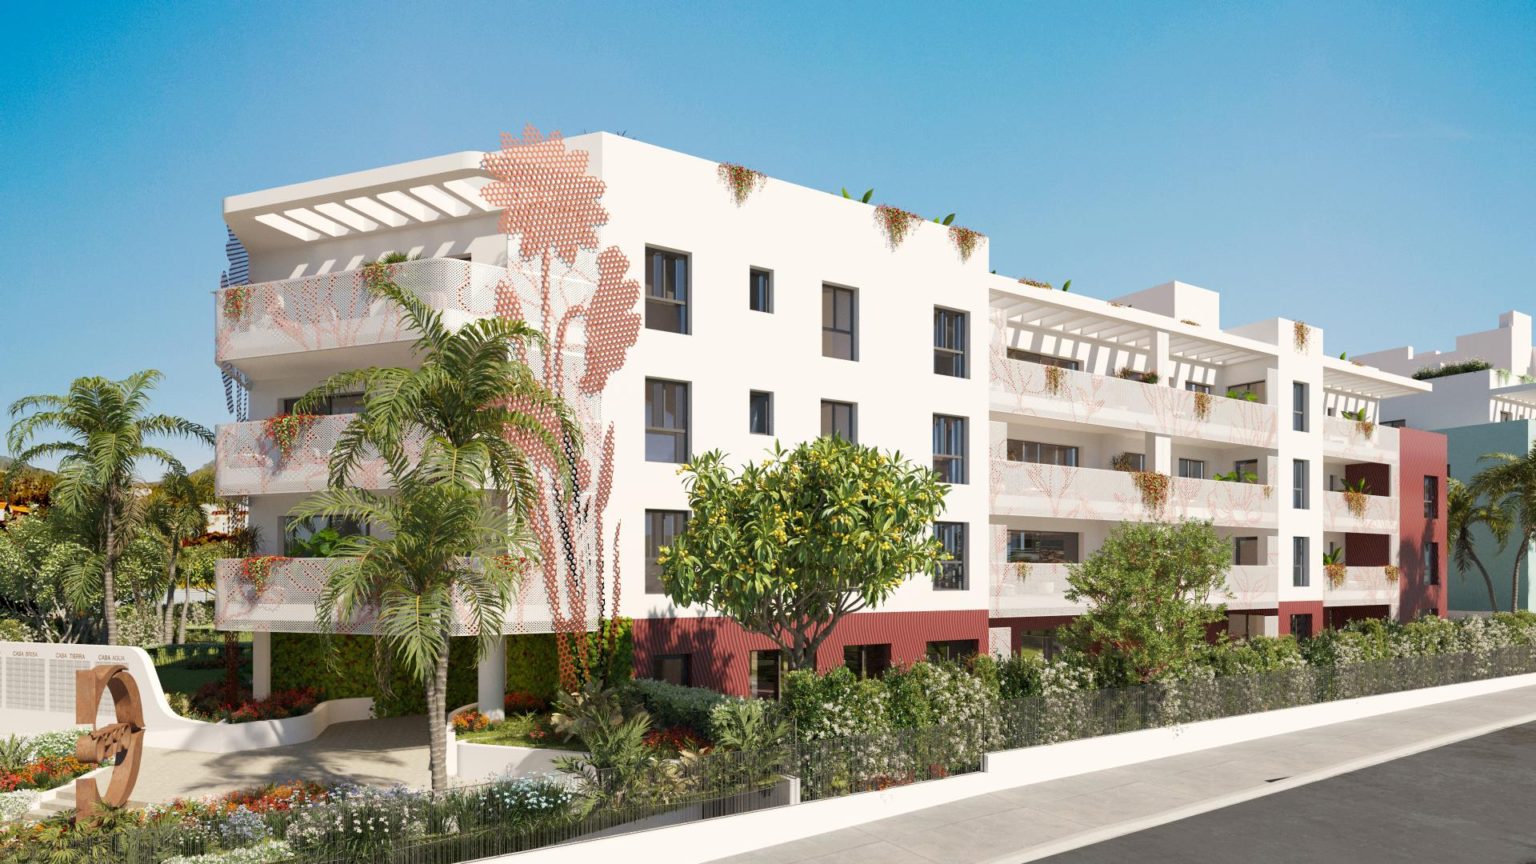 Apartamento de estilo de vida de 2 dormitorios junto a la playa en la ciudad de Ibiza con gestión de alquiler gratuita para inversores